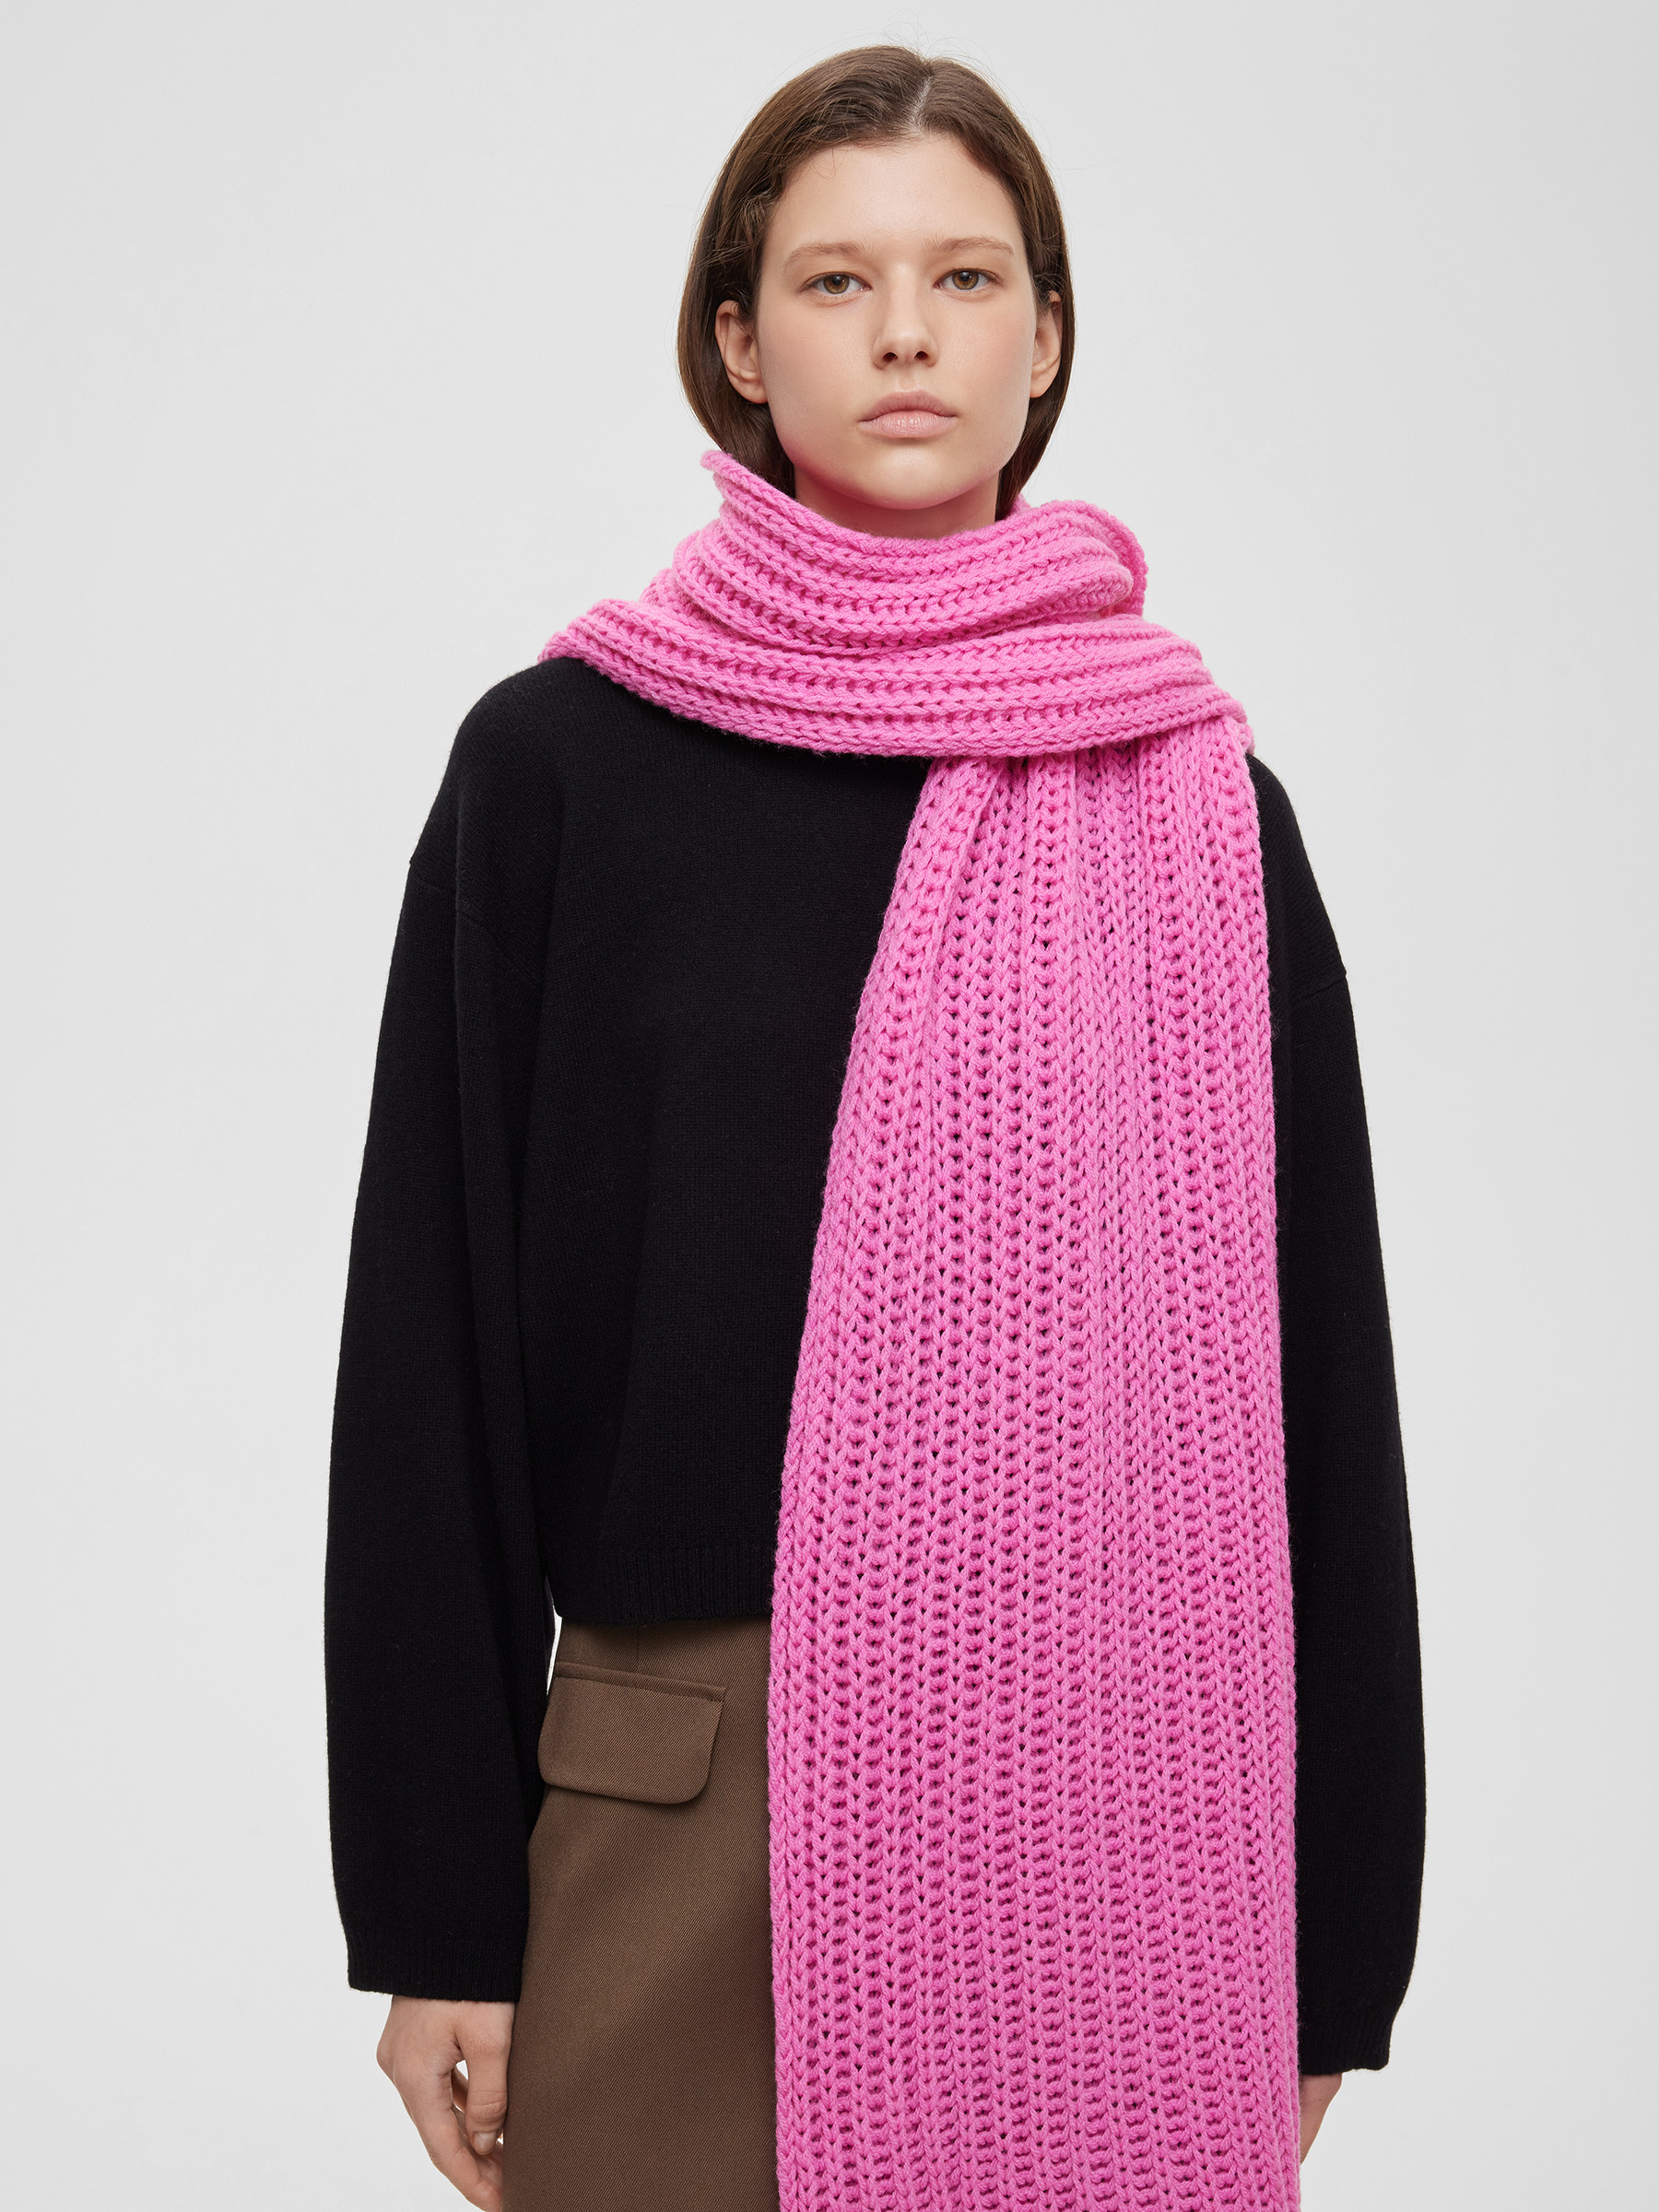 Шарф легкий крупной вязки, цвет – розовая фуксия шарф легкий крупной вязки цвет – розовая фуксия